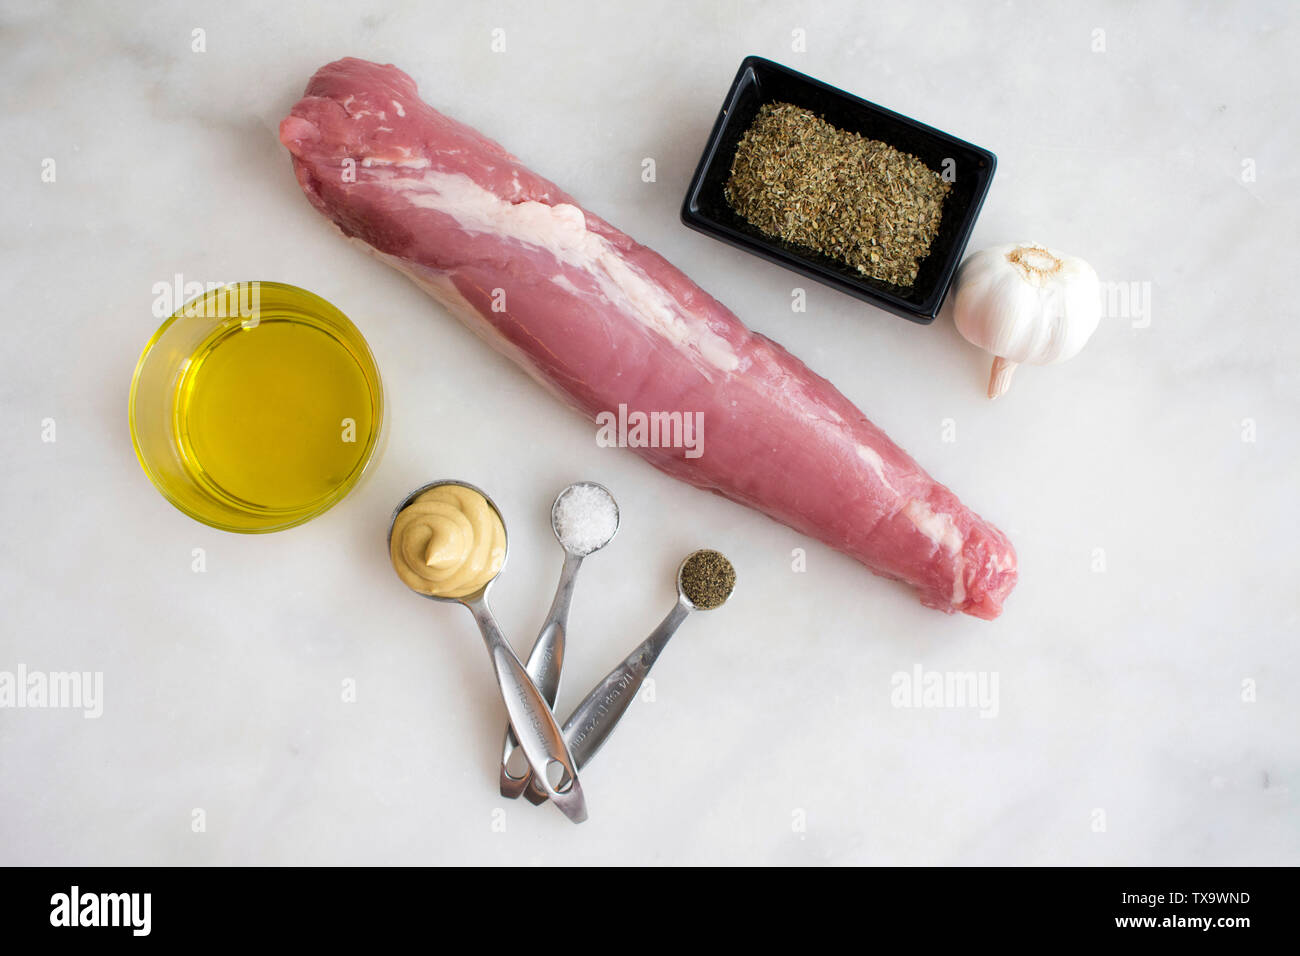 Con costra de hierbas y mostaza lomo de cerdo Ingredientes Foto de stock